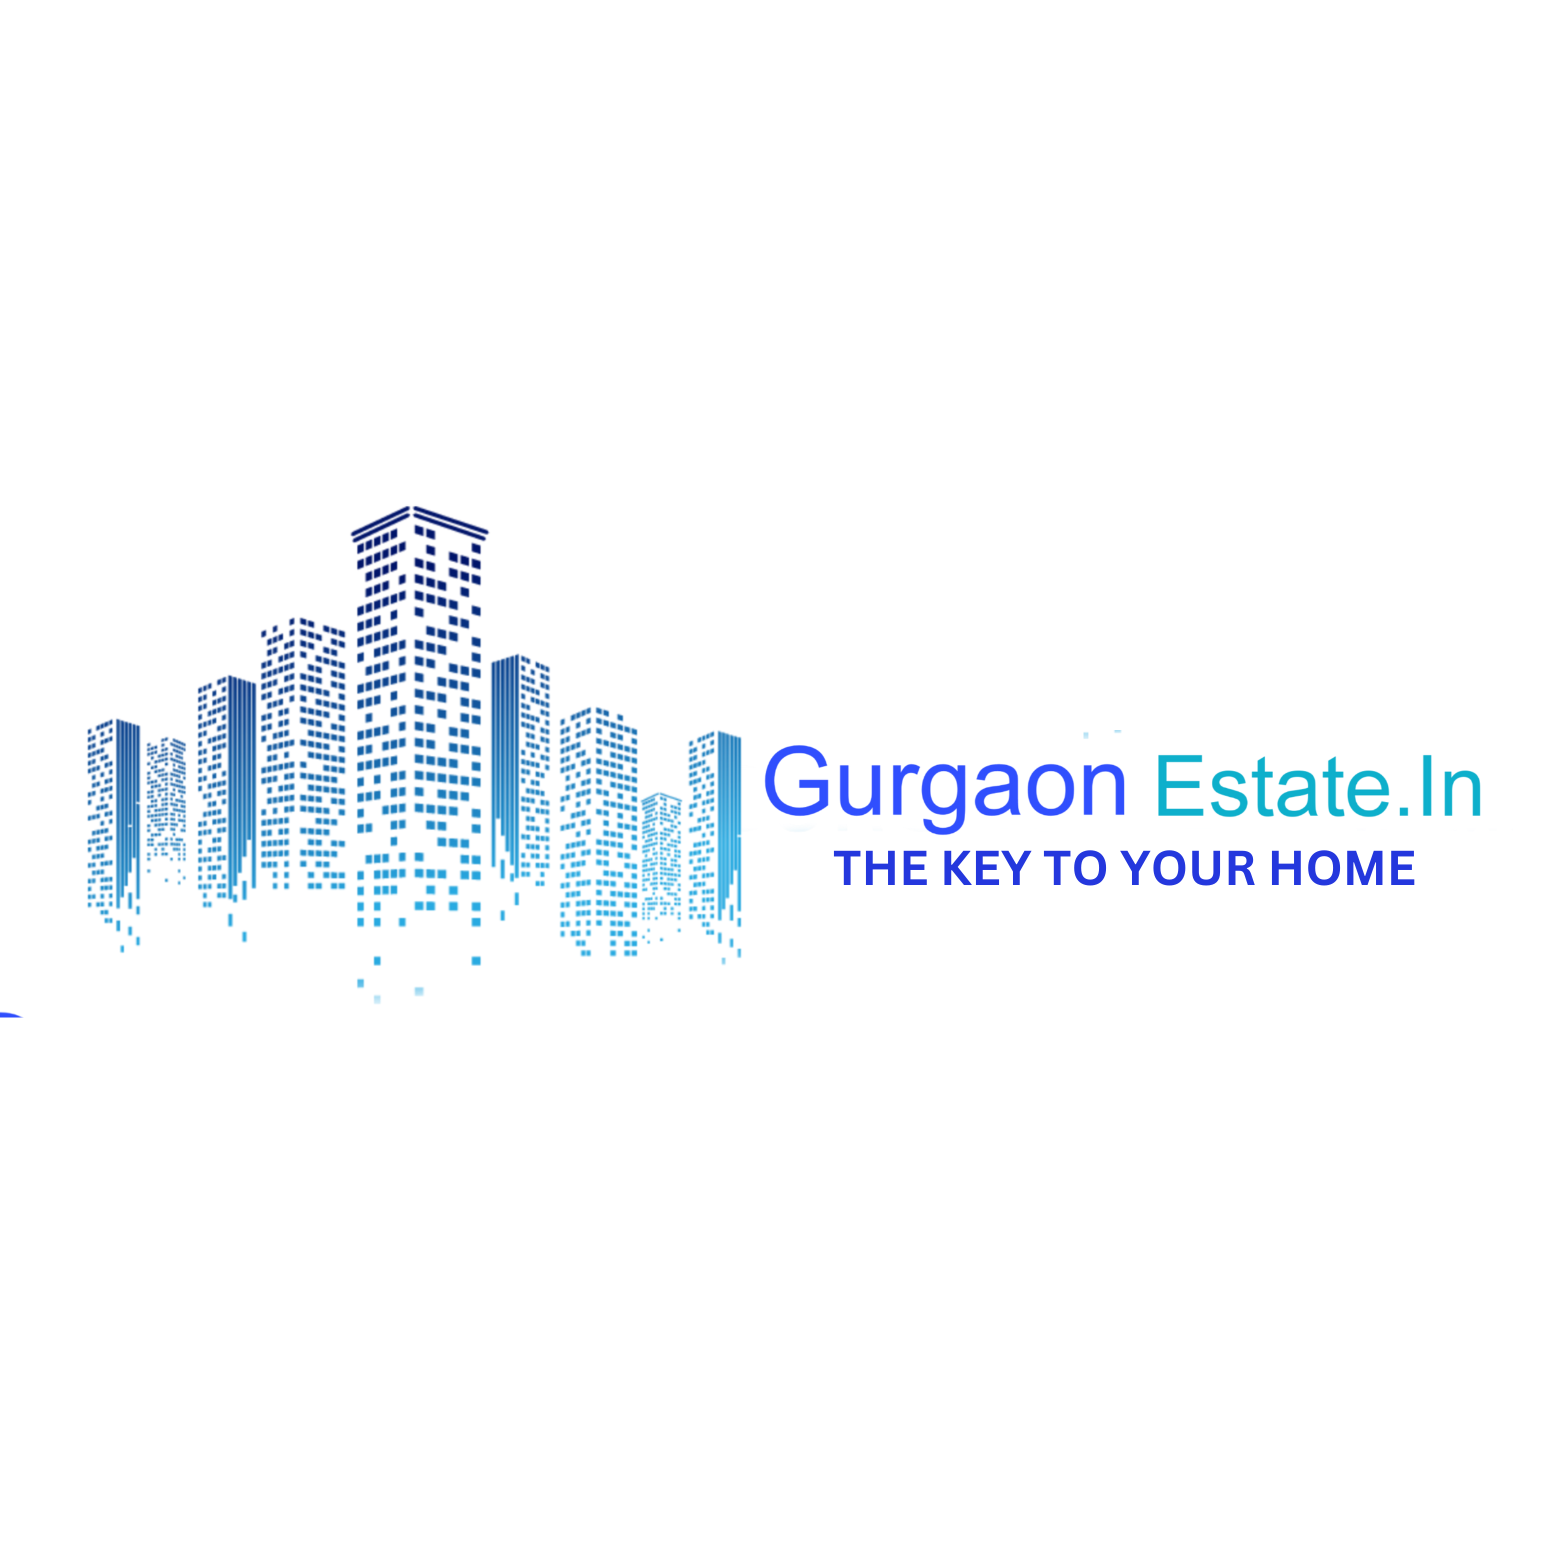 Gurgaon Estate.In